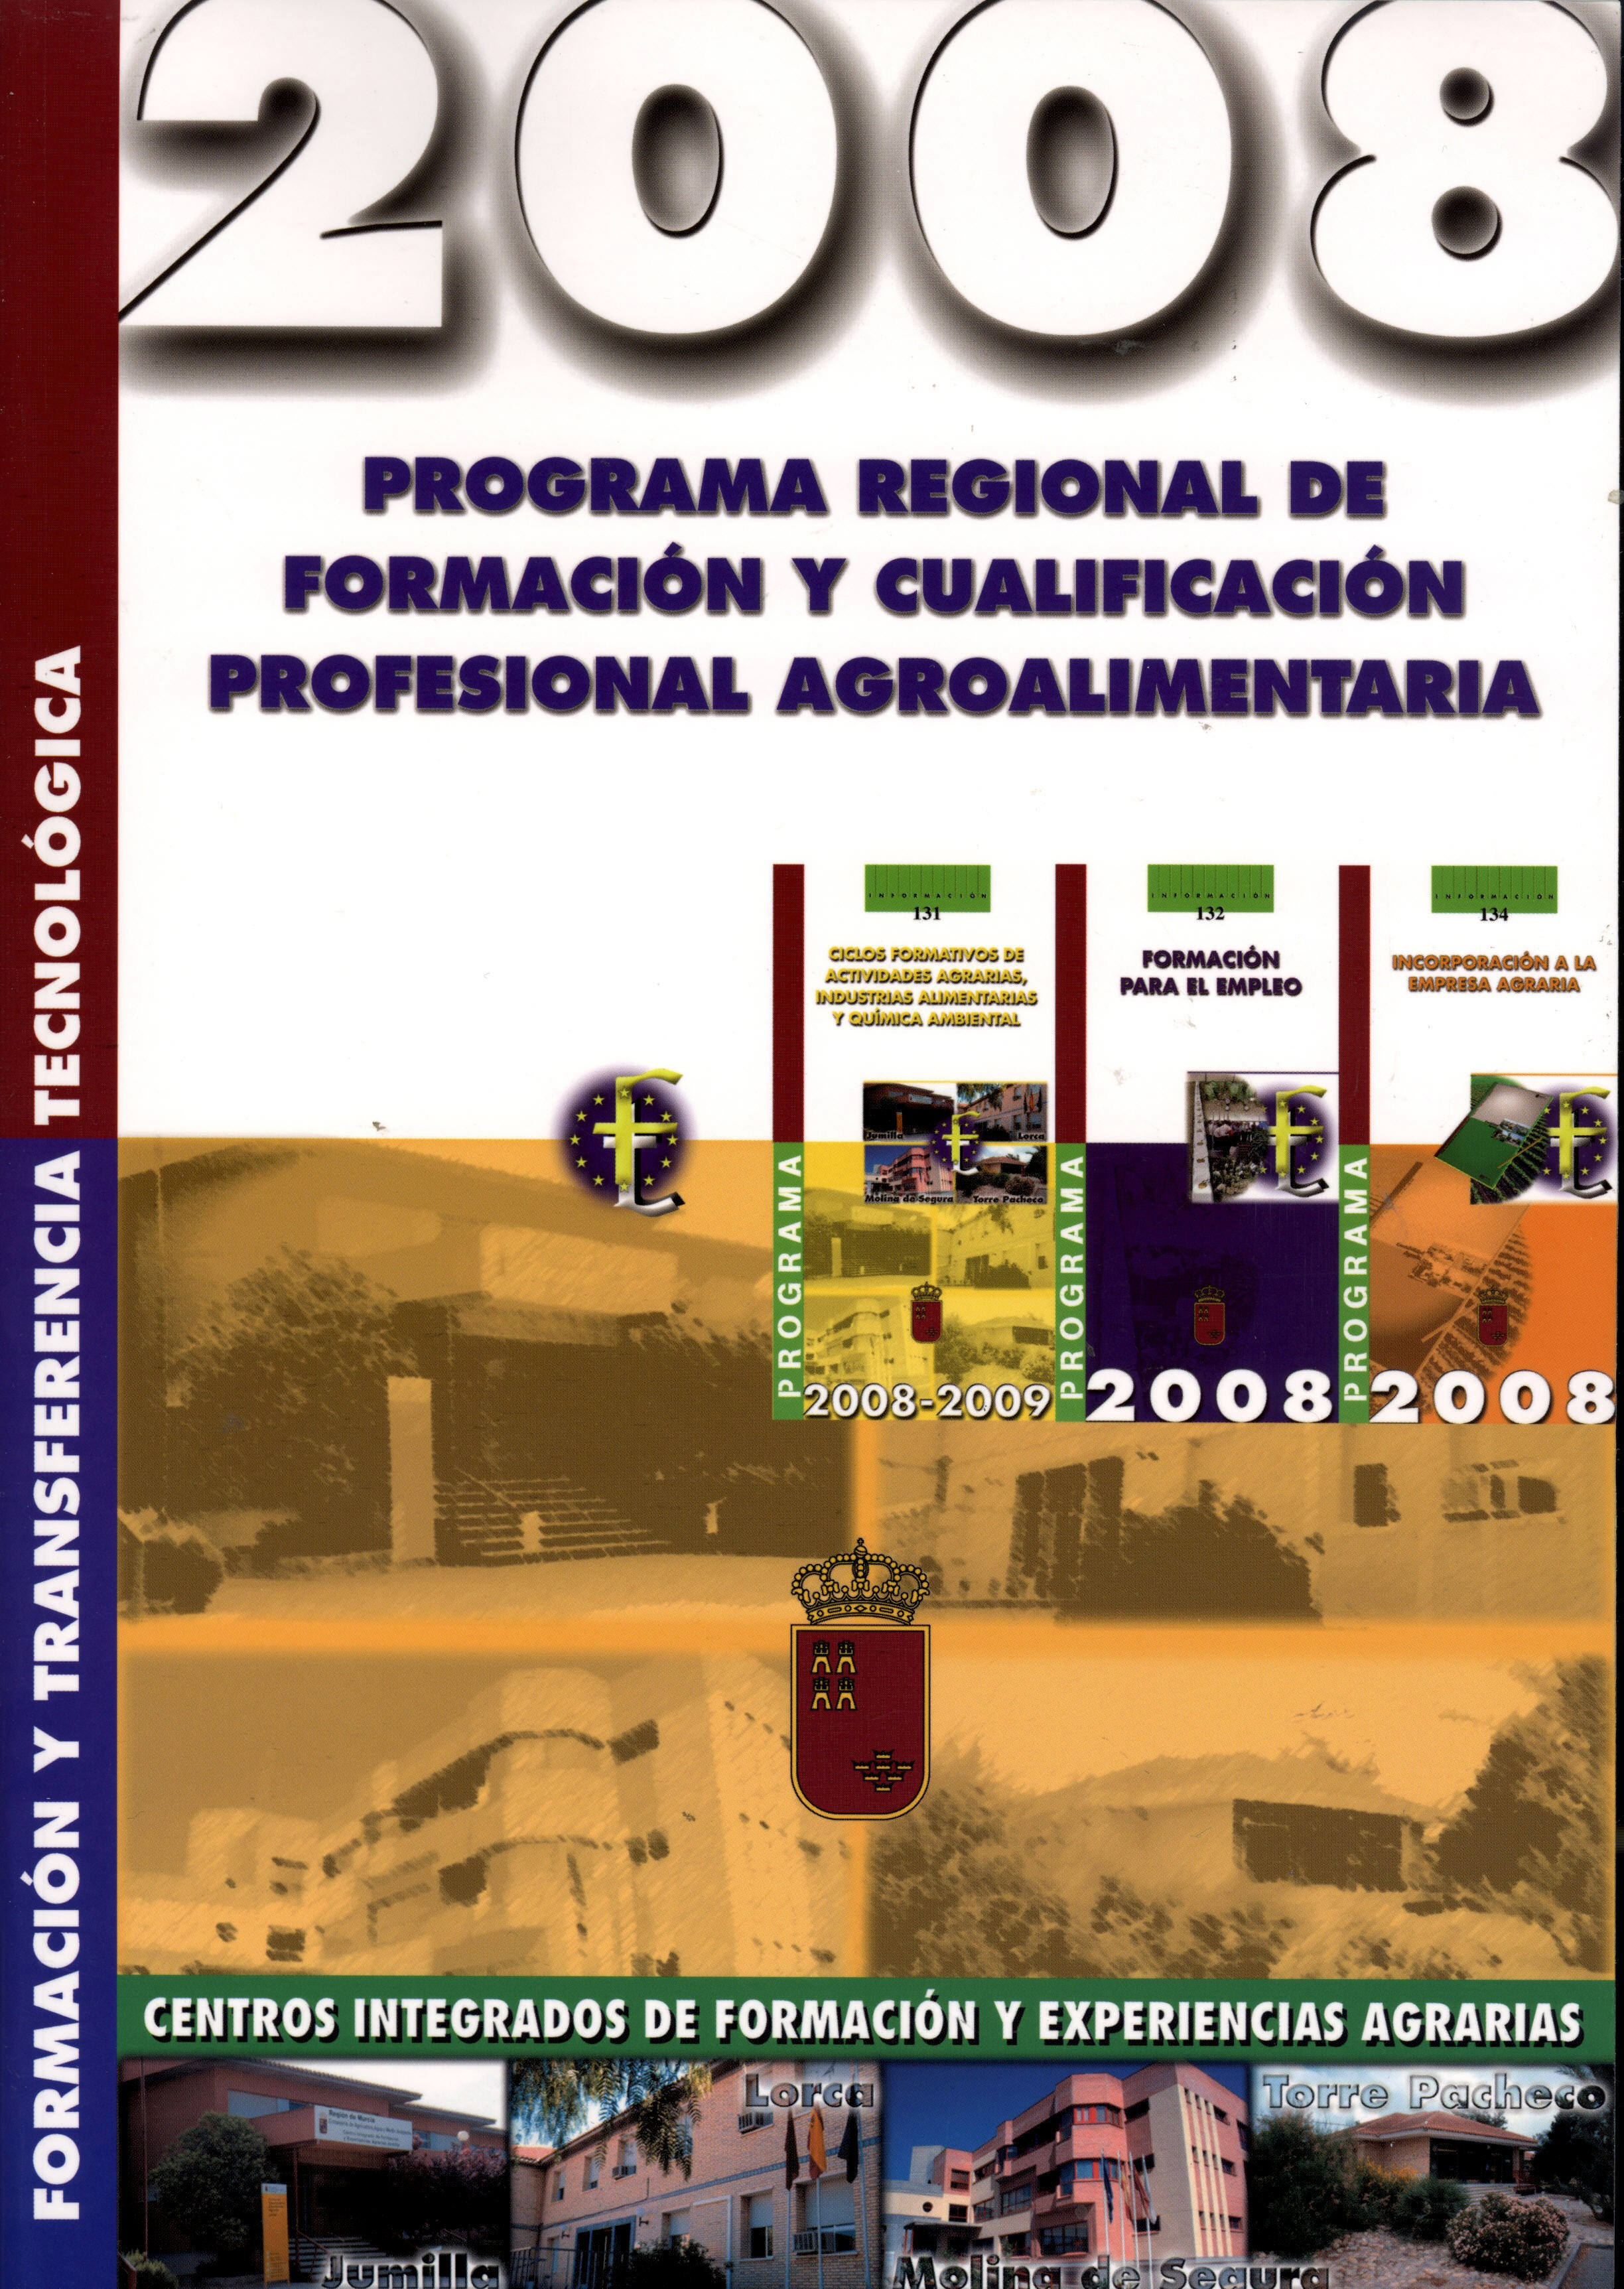 Portada de "2008: Programa regional de formación y cualificación profesional agroalimentaria"